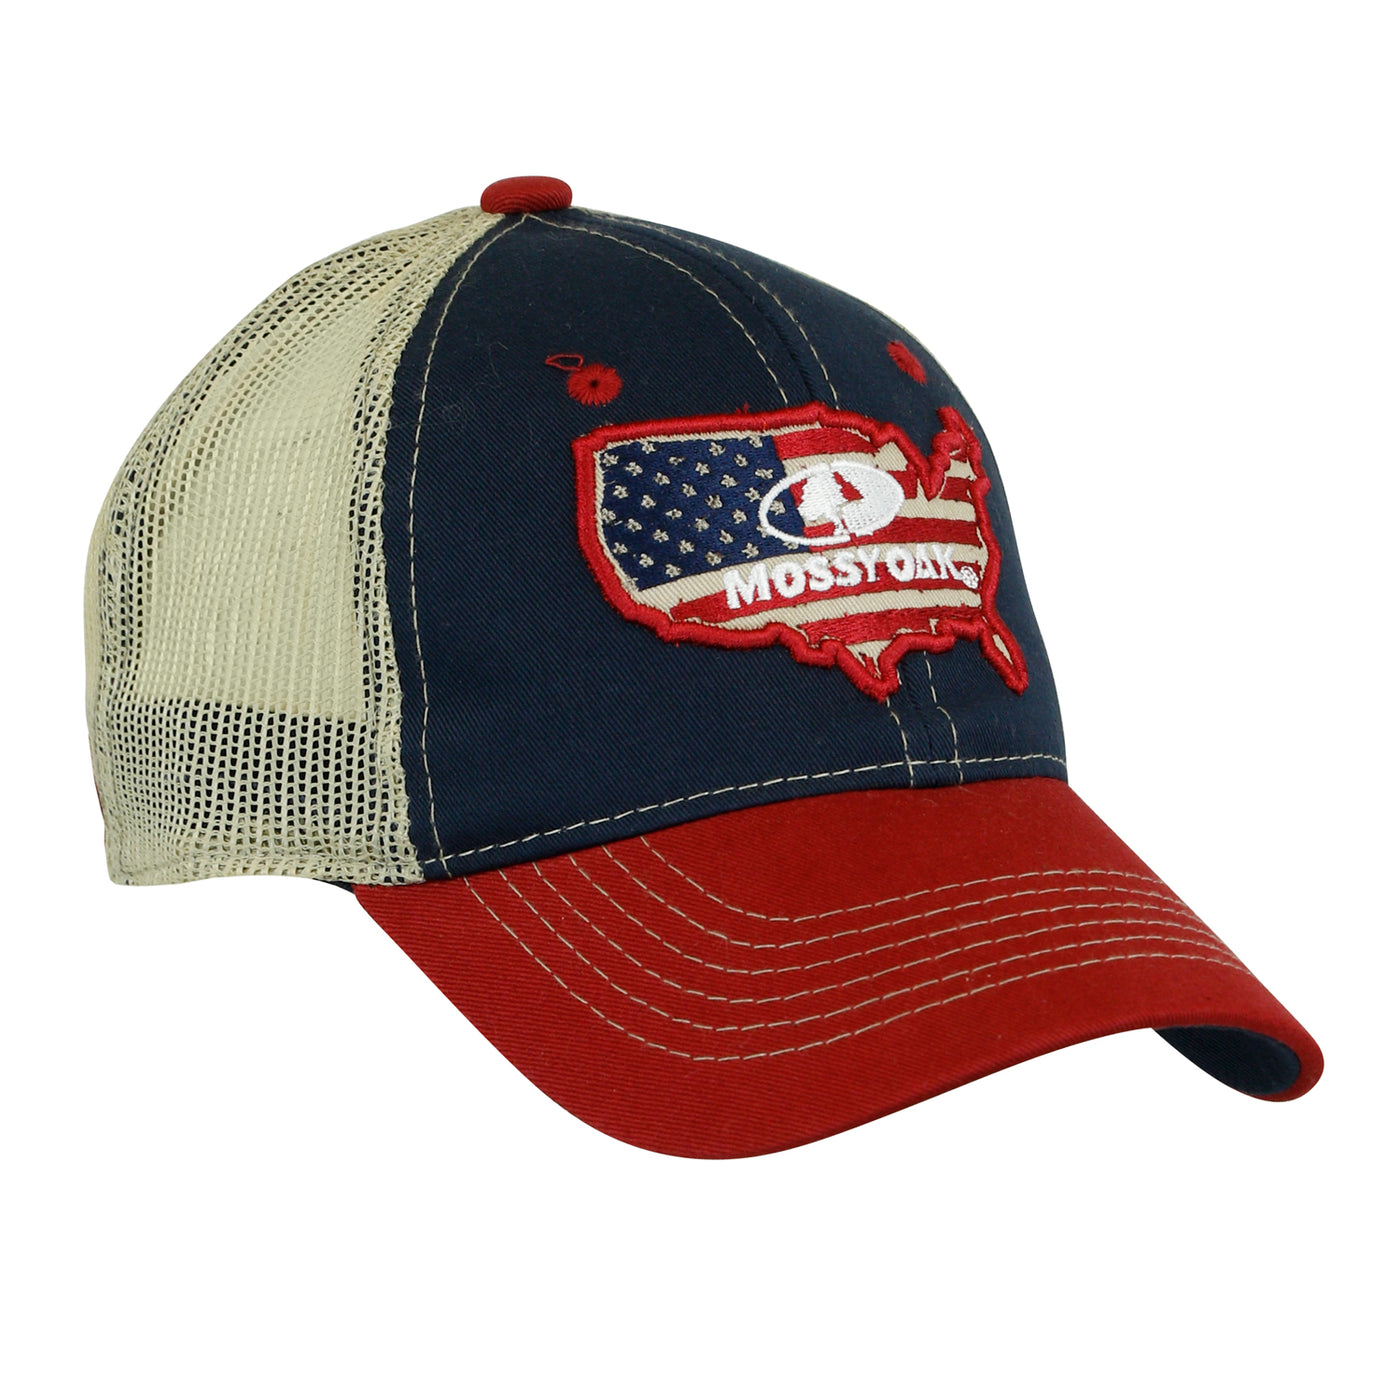 Mossy Oak USA Trucker Cap